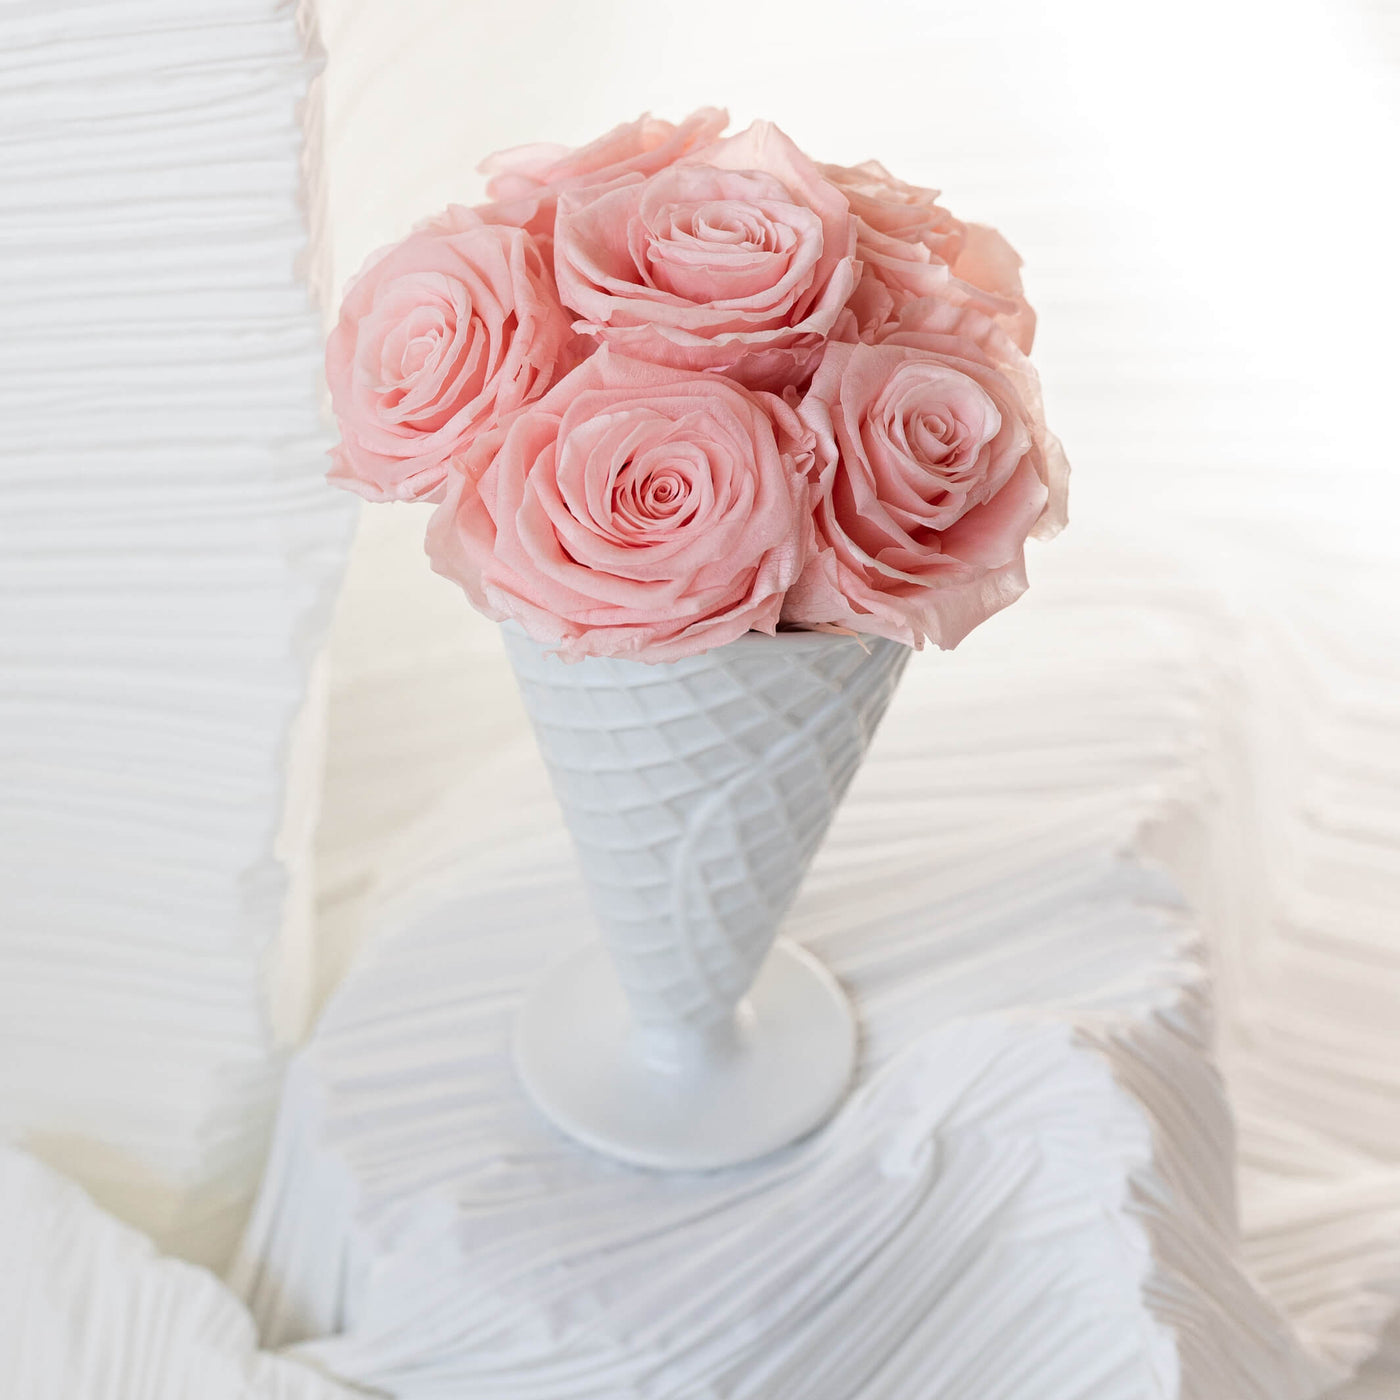 Forever roses arranged in a white ceramic vase